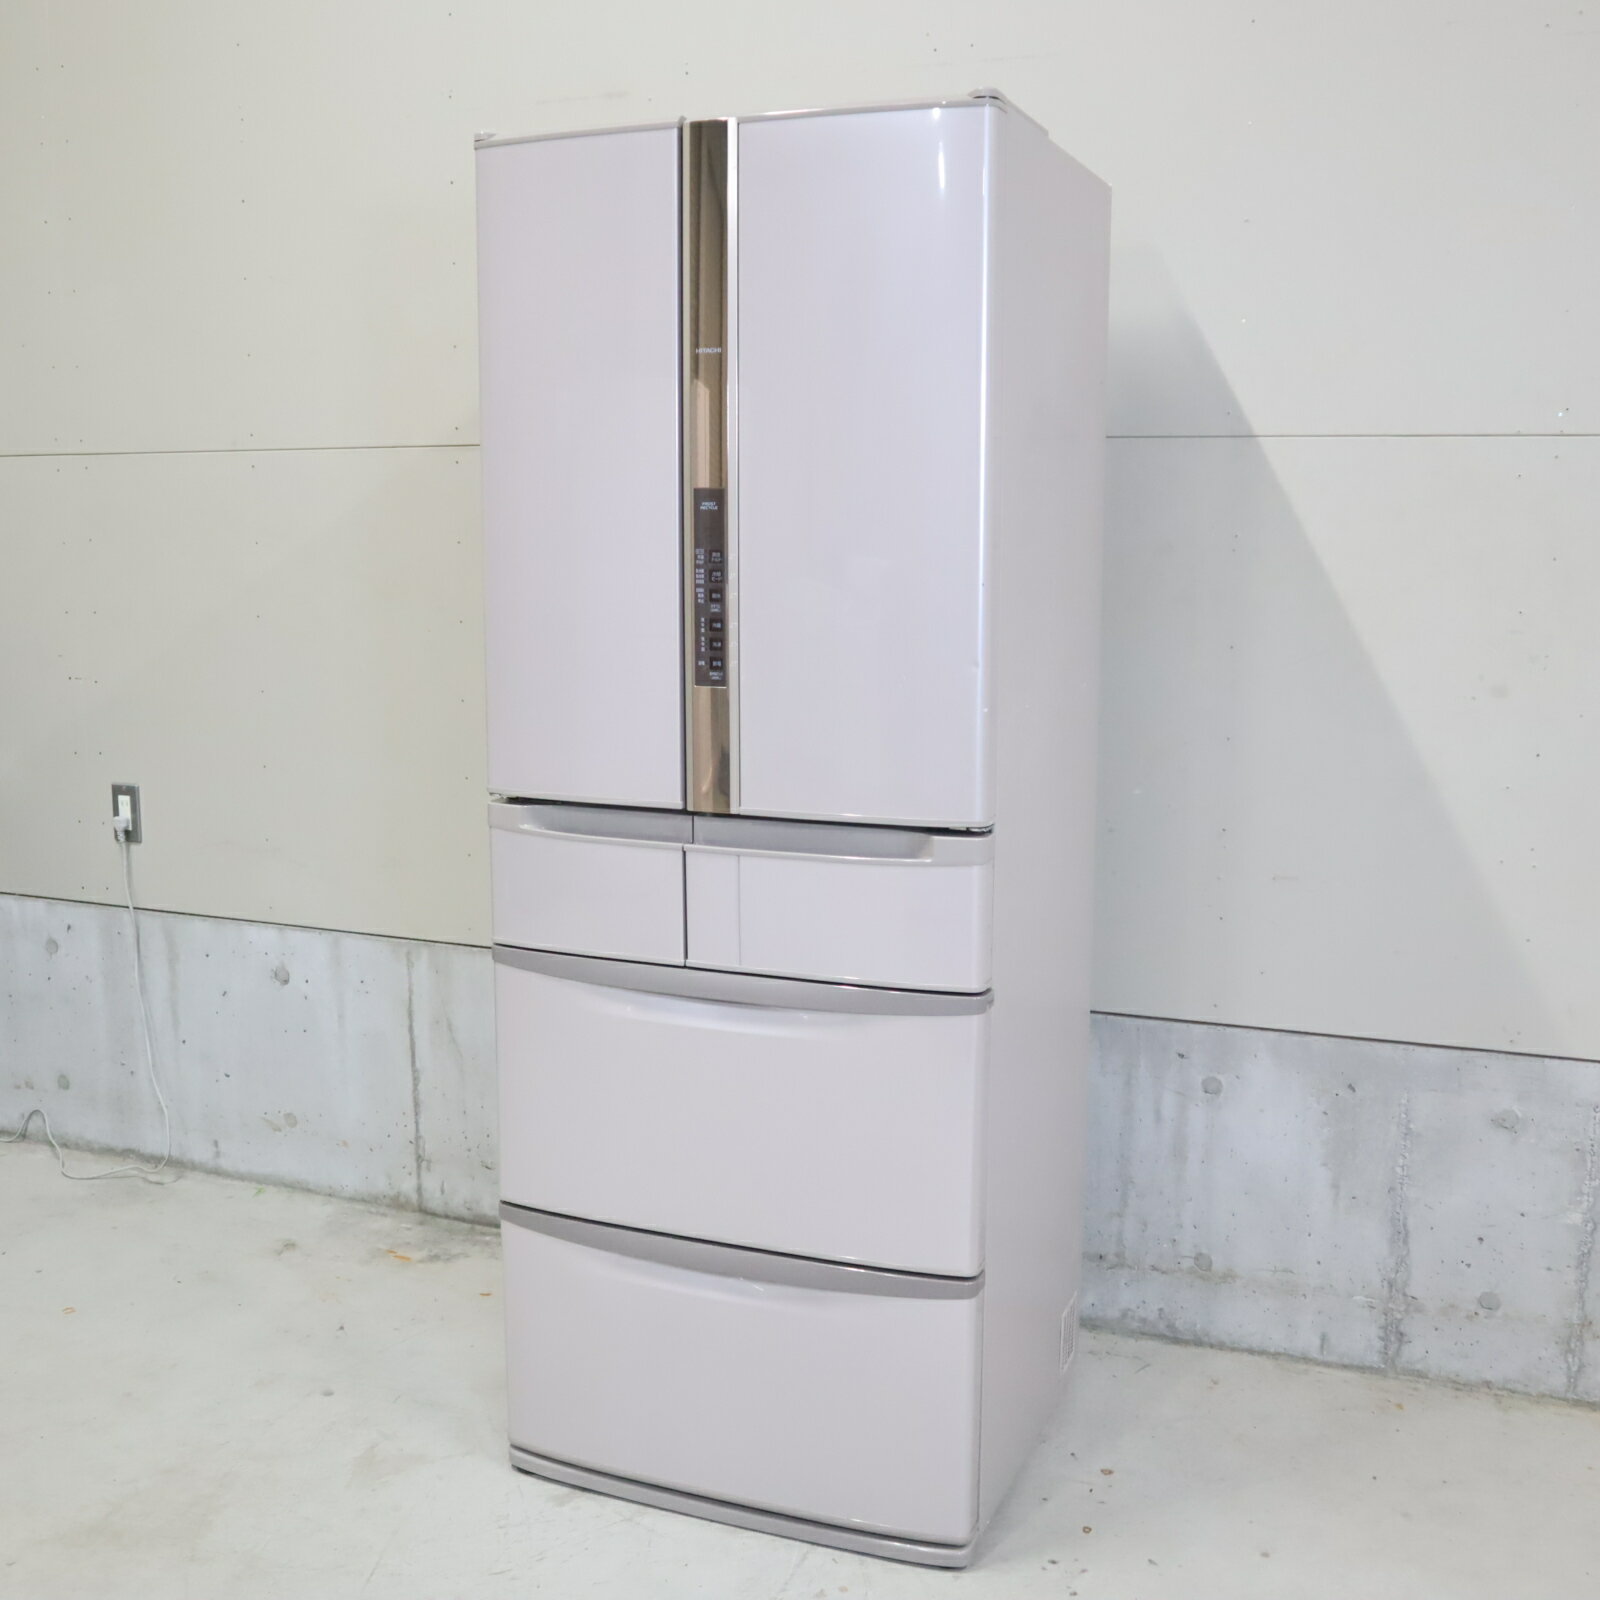 【中古】大安売り 関東地域限定 日立 HITACHI 冷凍冷蔵庫 R-SF42BM-T 475L 大型冷蔵庫 R60091